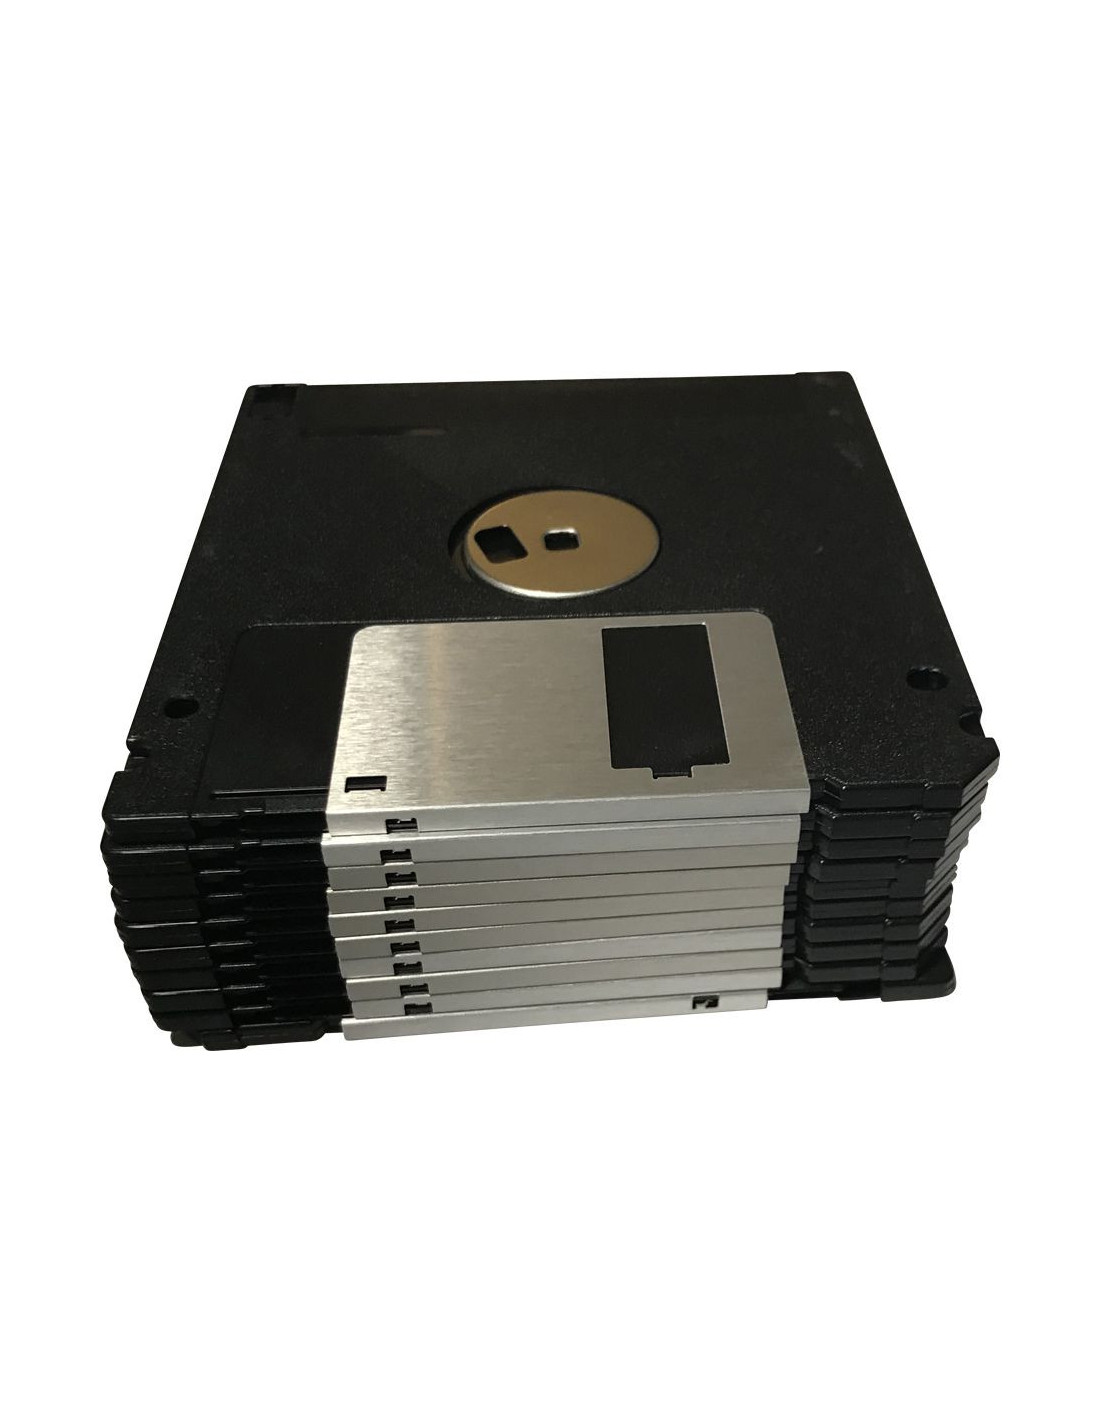 floppy disk iso double density format